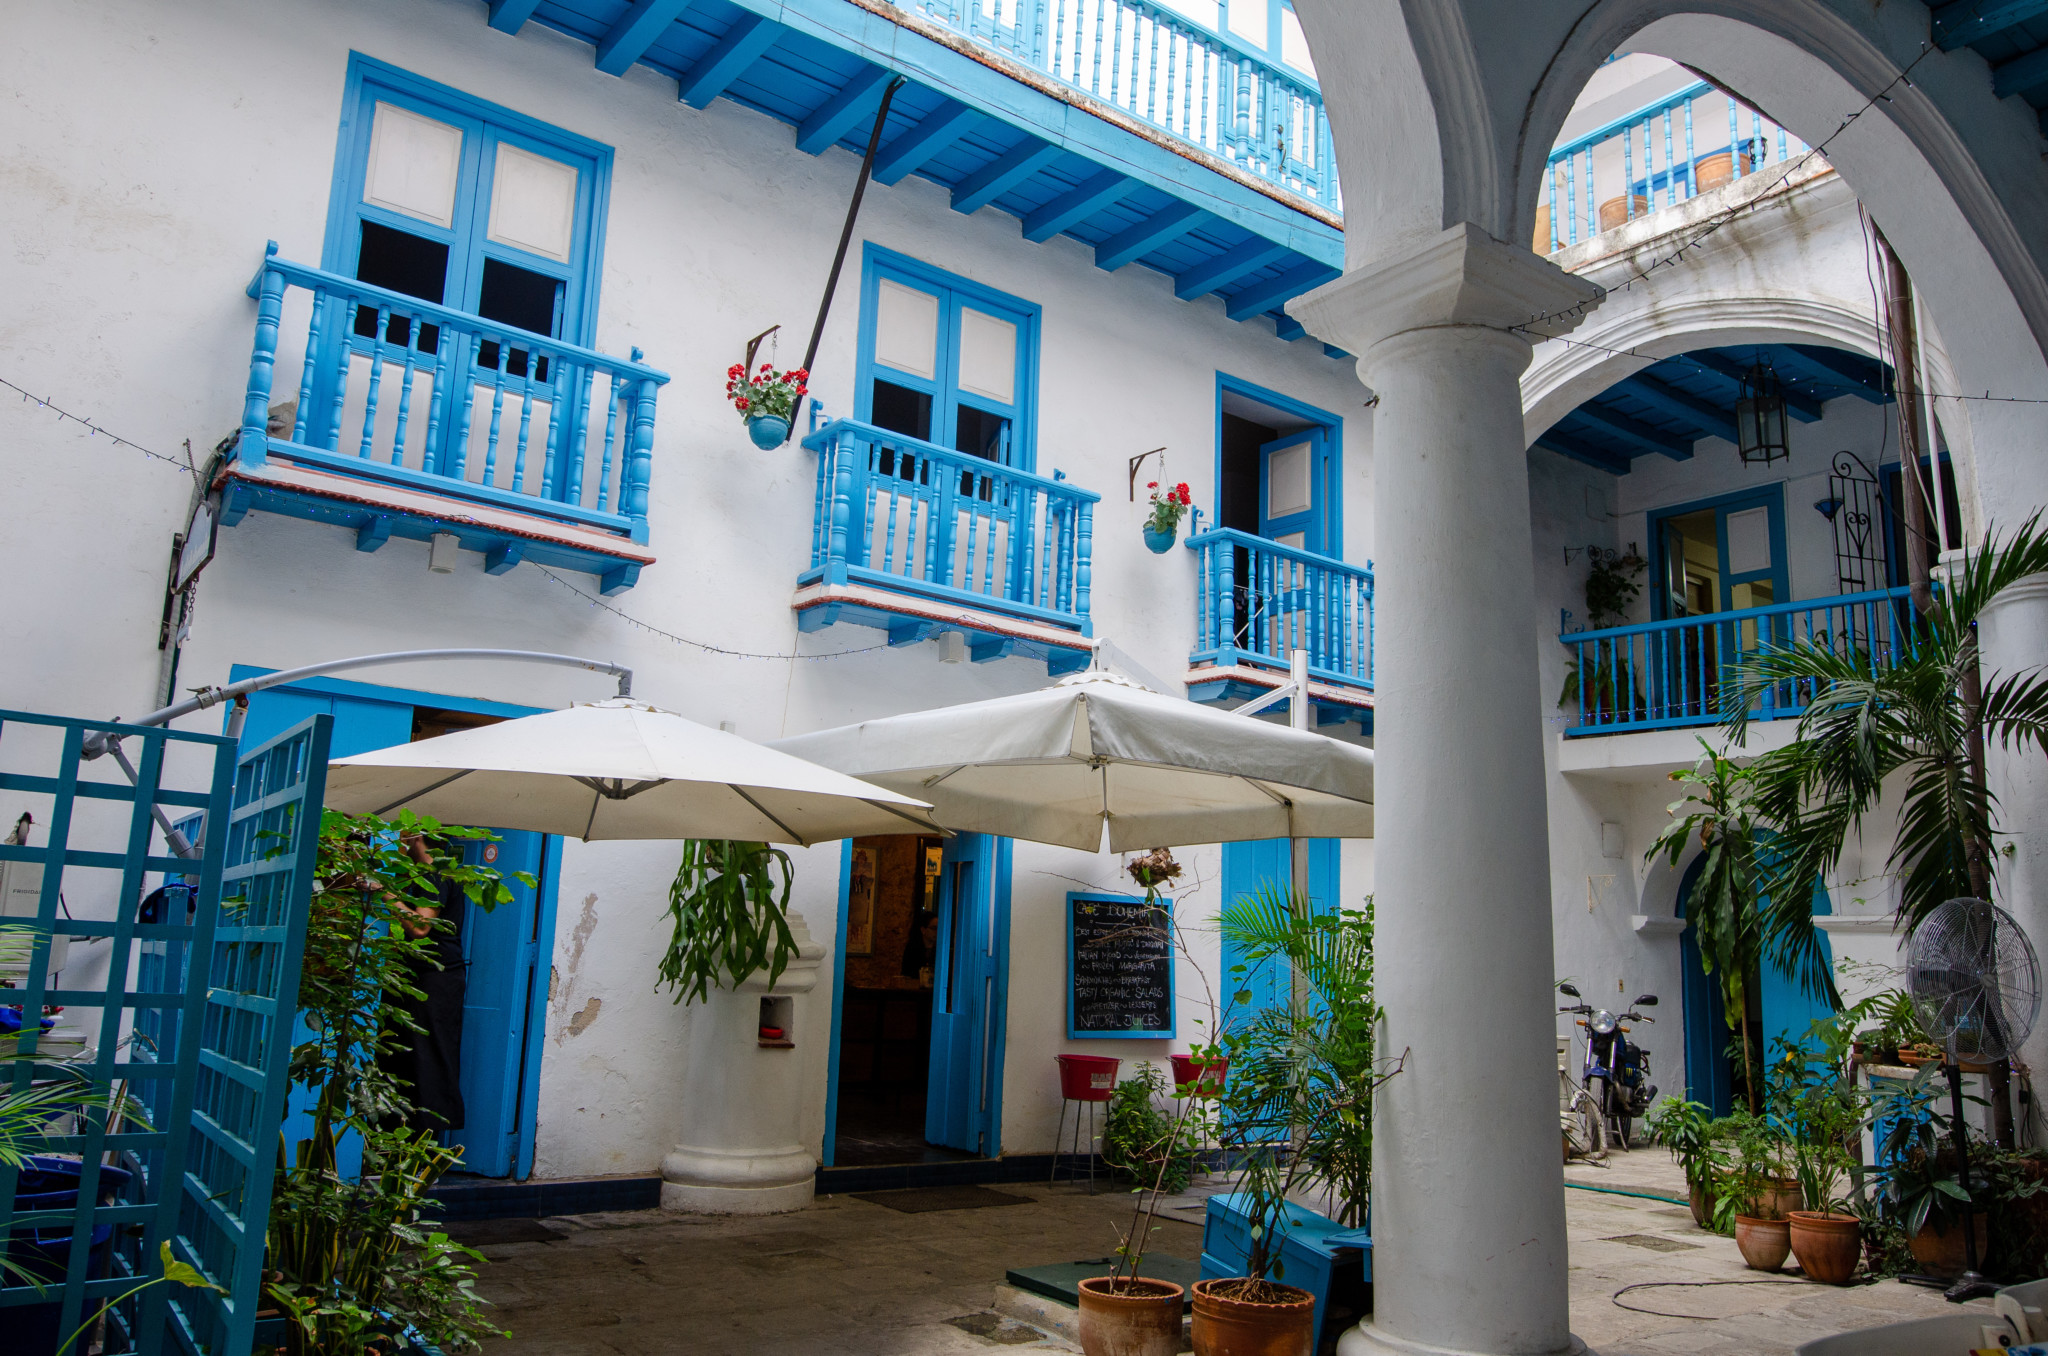 Innenhof vom Restaurant in Habana Vieja